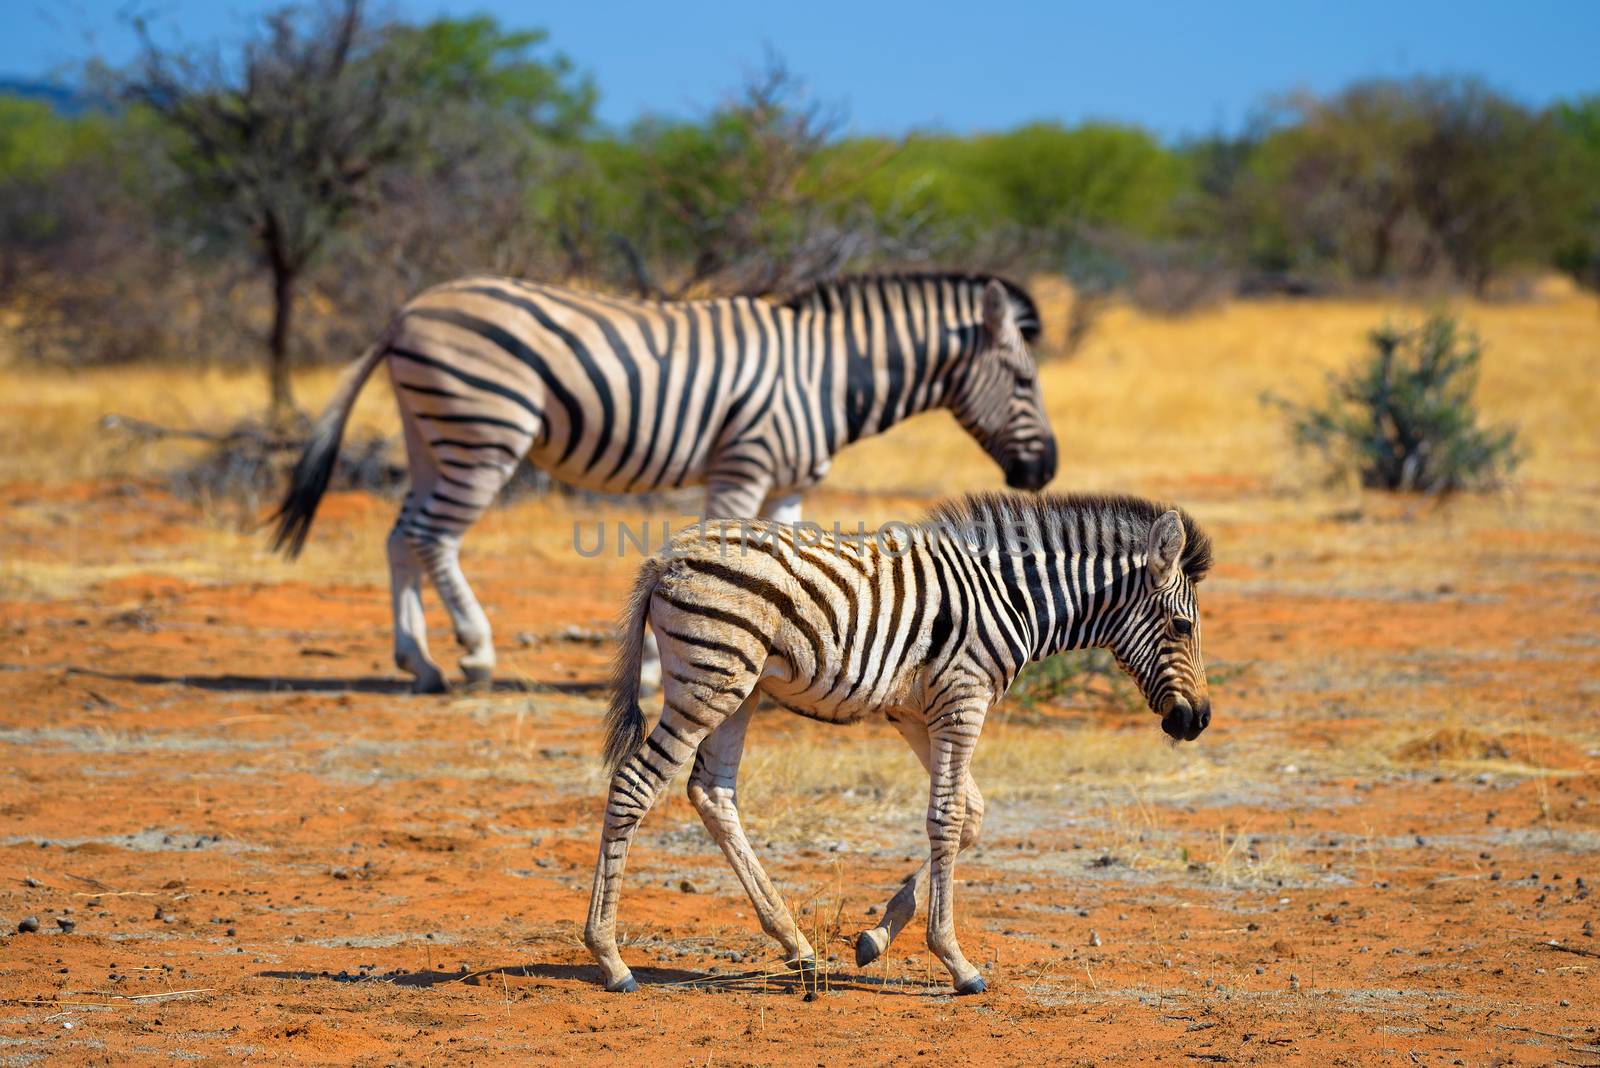 Two zebras in Etosha National Park, Namibia by nickfox